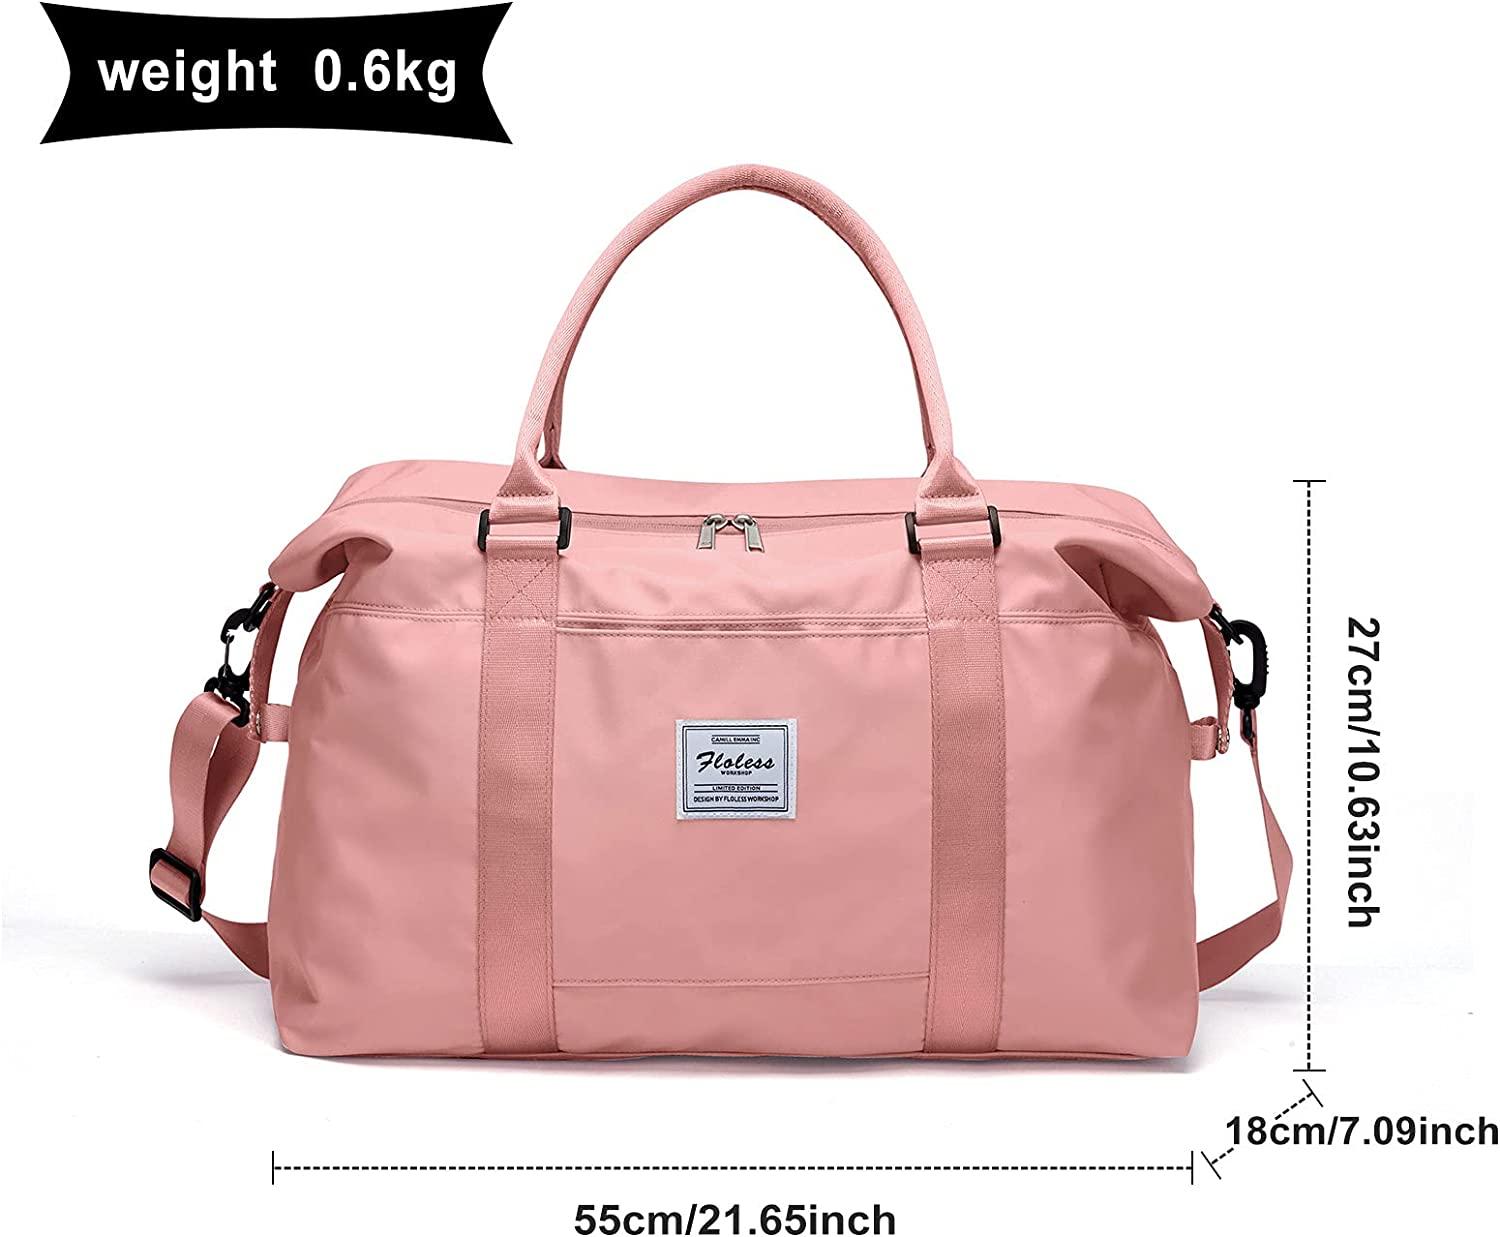 Women's Weekend Travel Bag, Large Shoulder Travel Bag